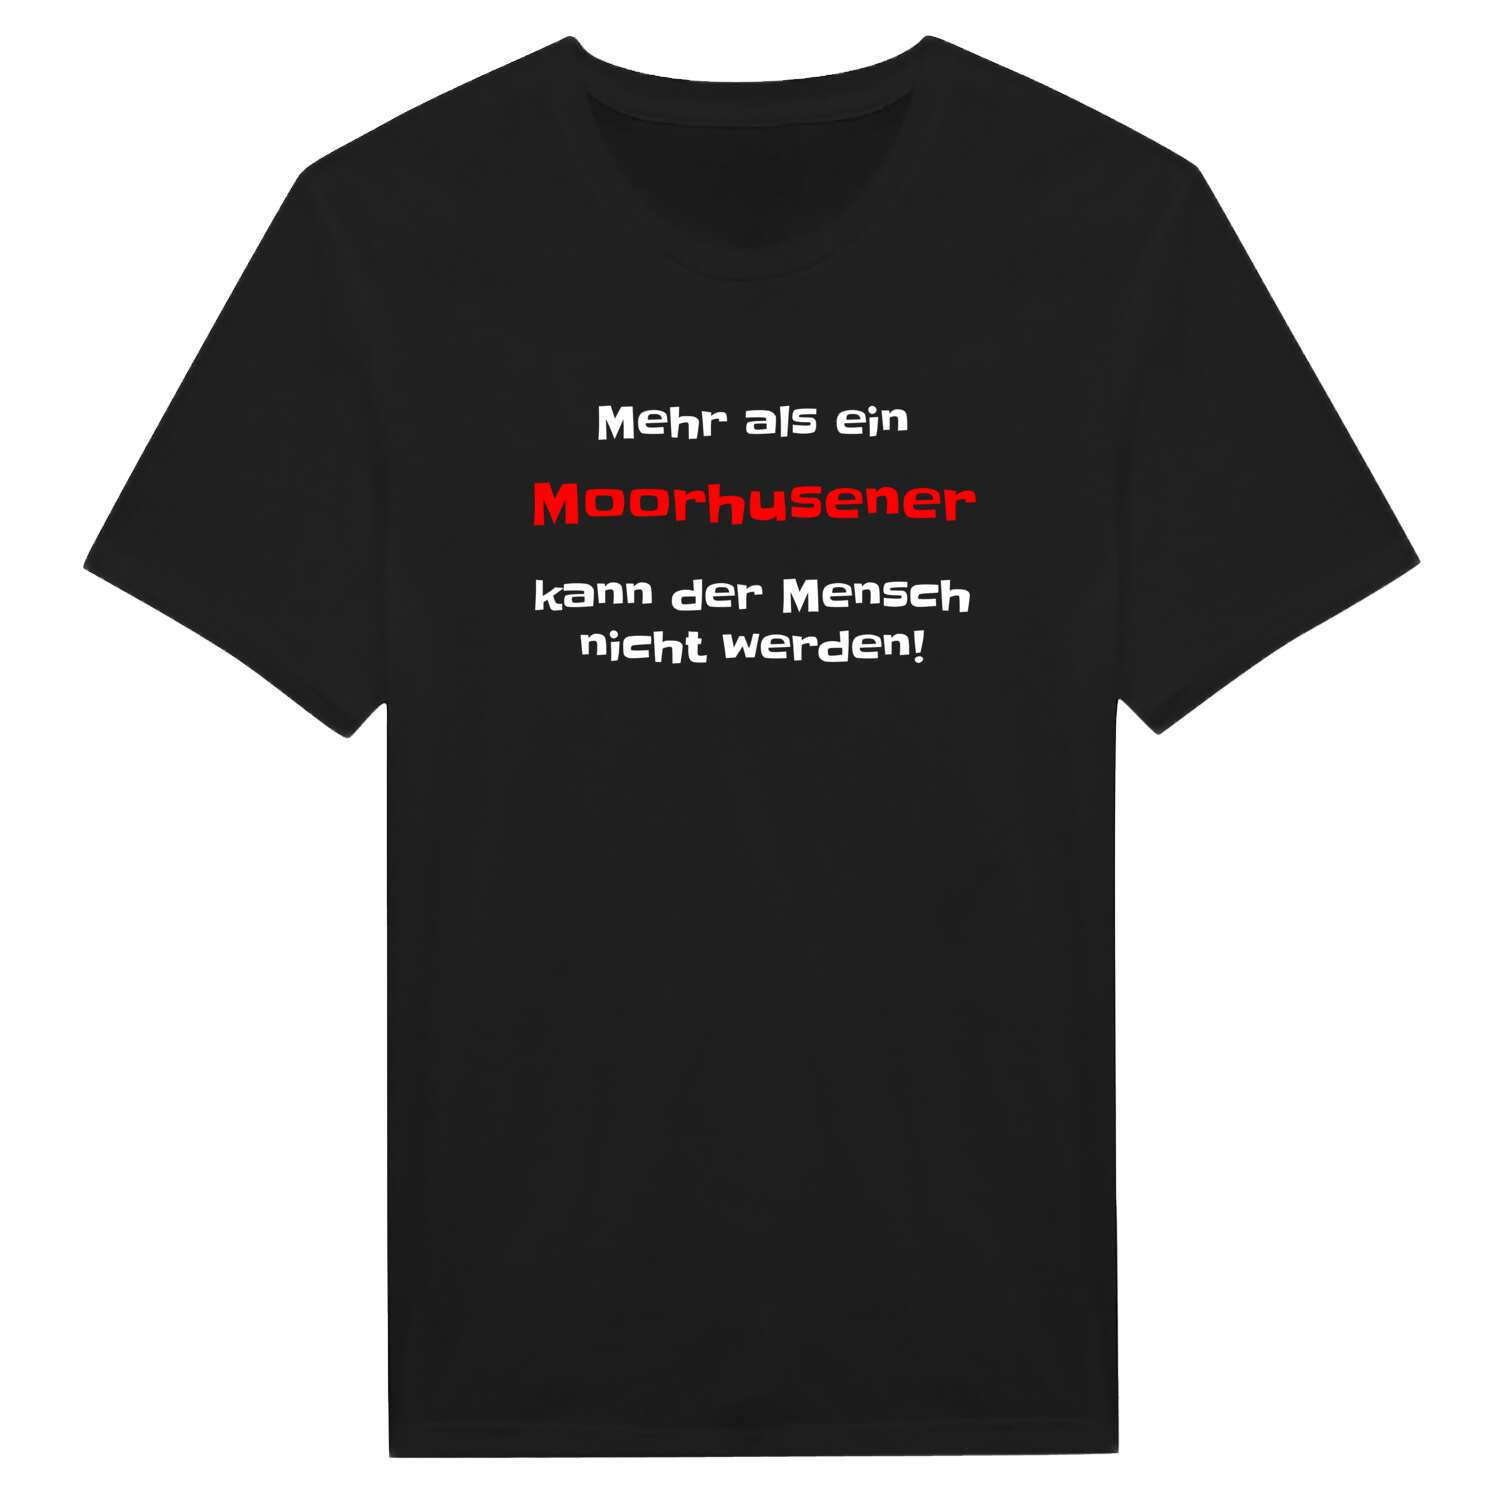 Moorhusen T-Shirt »Mehr als ein«